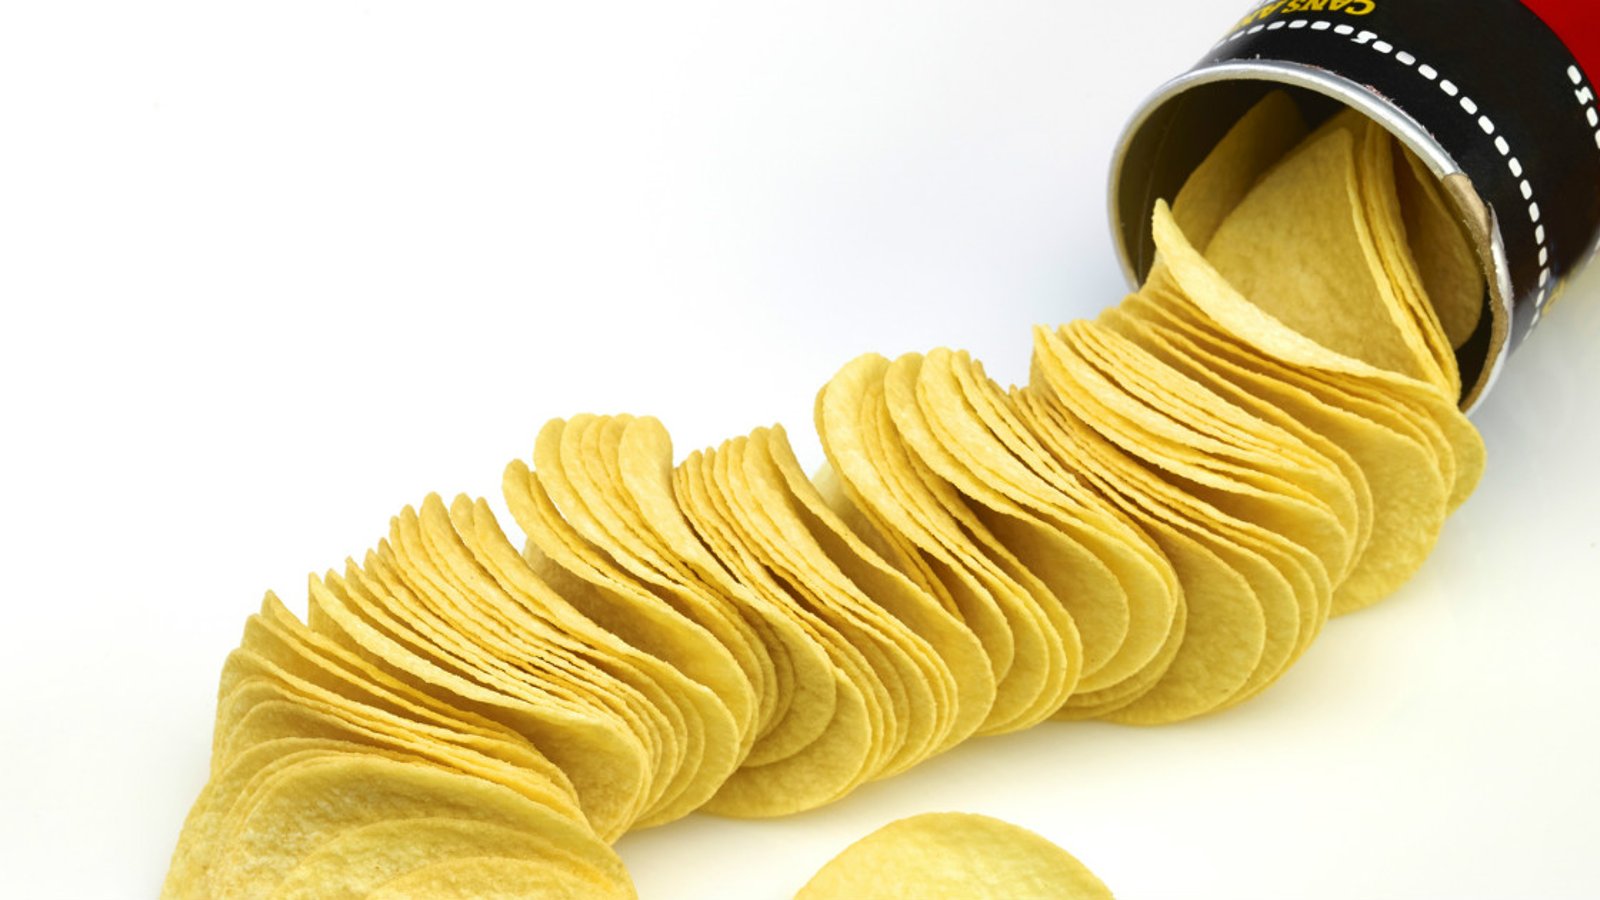 Ce que VOUS NE SAVEZ PAS à propos des chips PRINGLES et qui vous fera HÉSITER avant d’en manger!